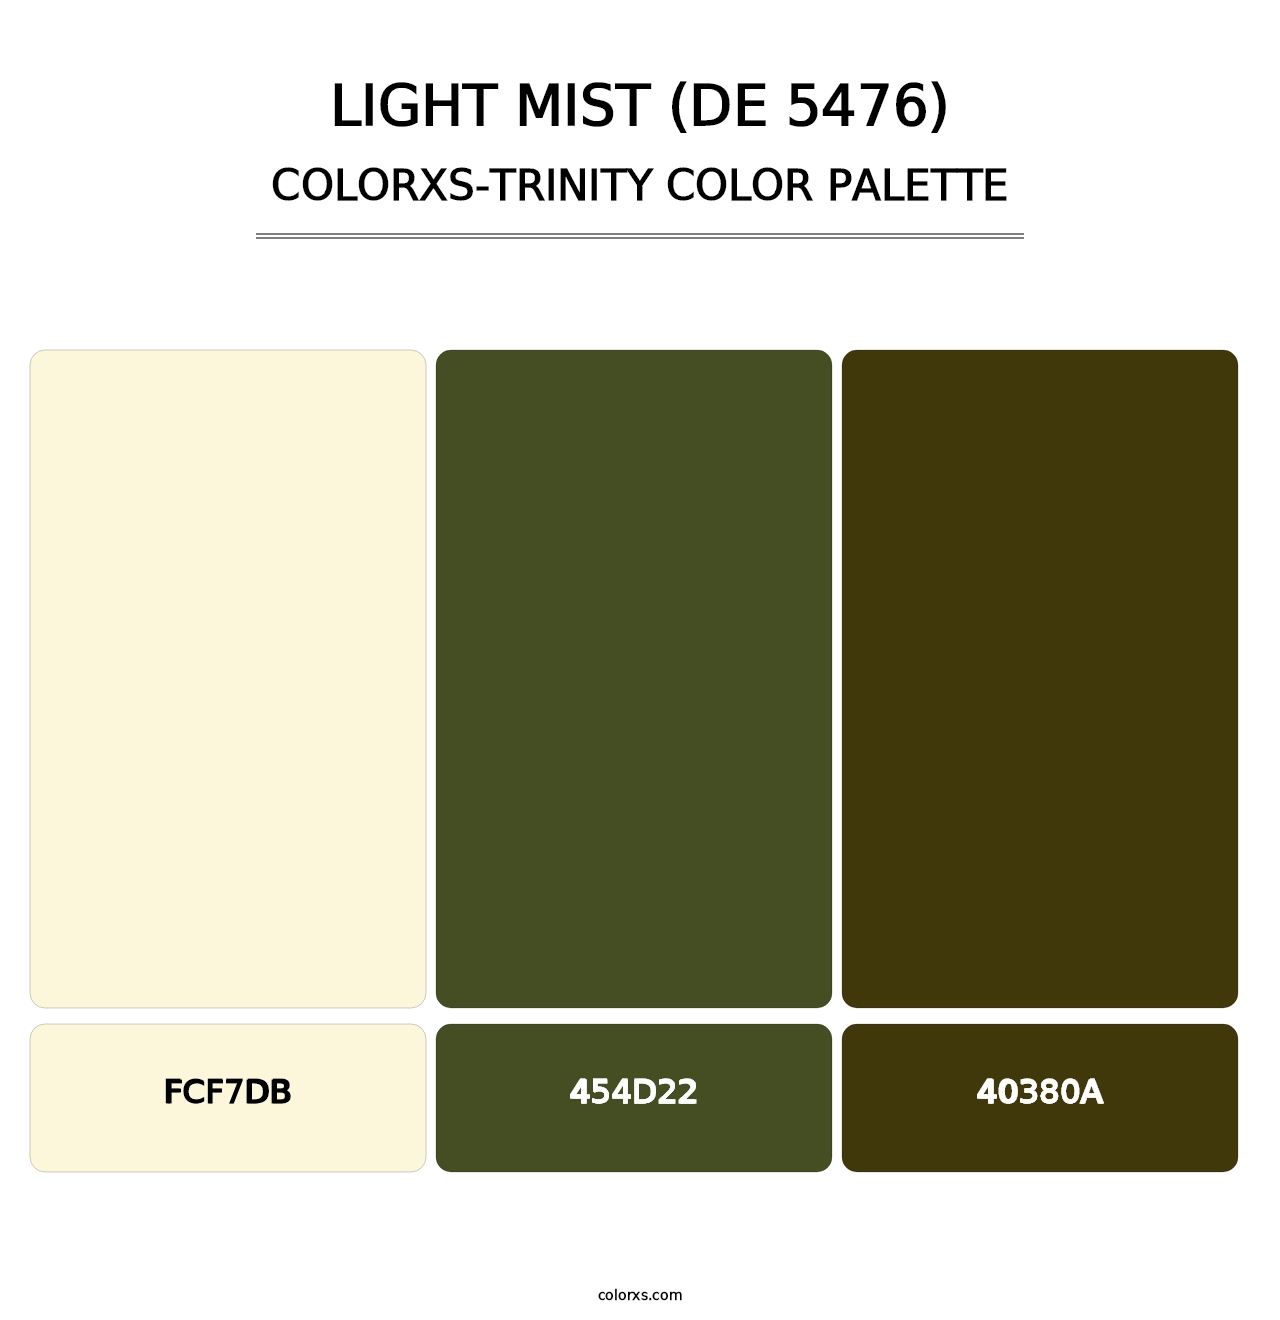 Light Mist (DE 5476) - Colorxs Trinity Palette